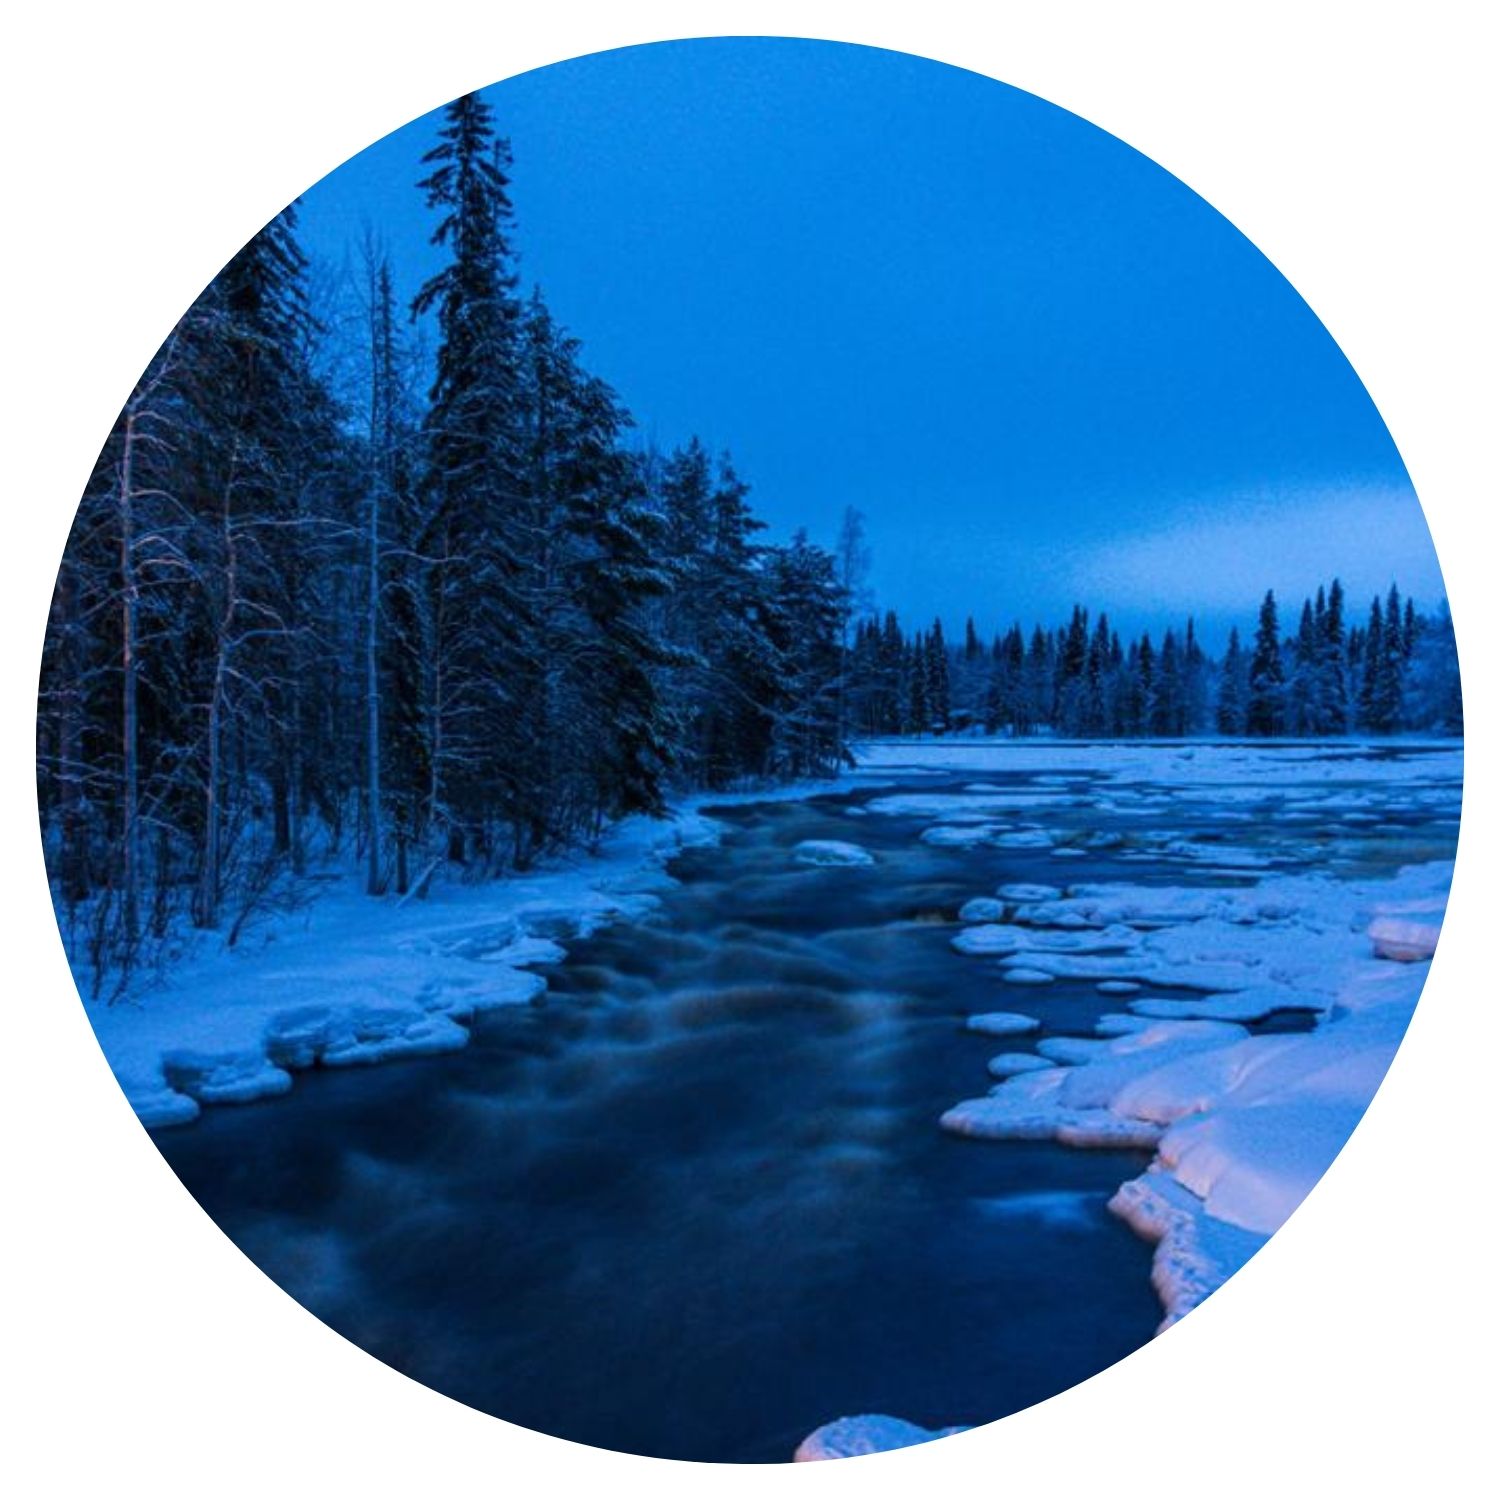 Une forêt de sapins recouverte de neige avec un lac gelé traversant la forêt, capturée dans la nuit apaisante de Finlande, offrant une vue sereine et hivernale.